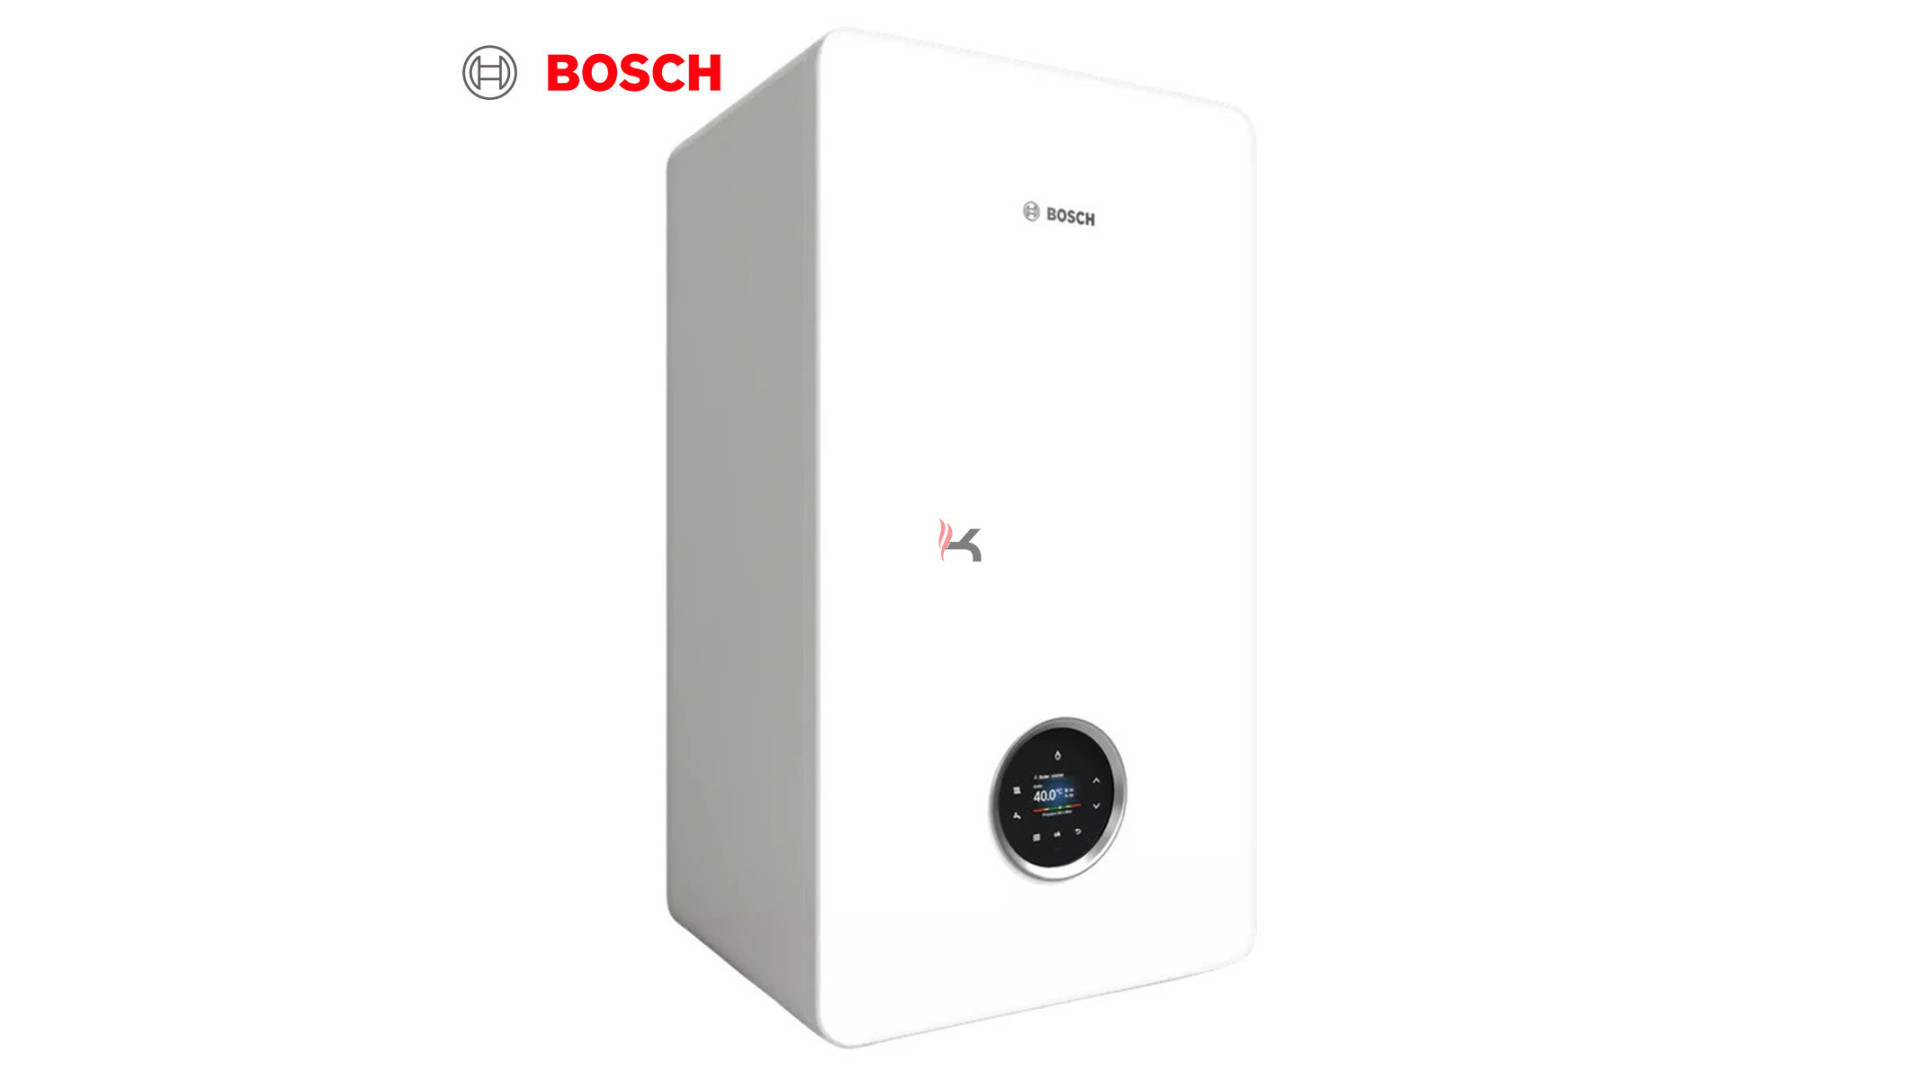 Bosch 7736902852.jpg